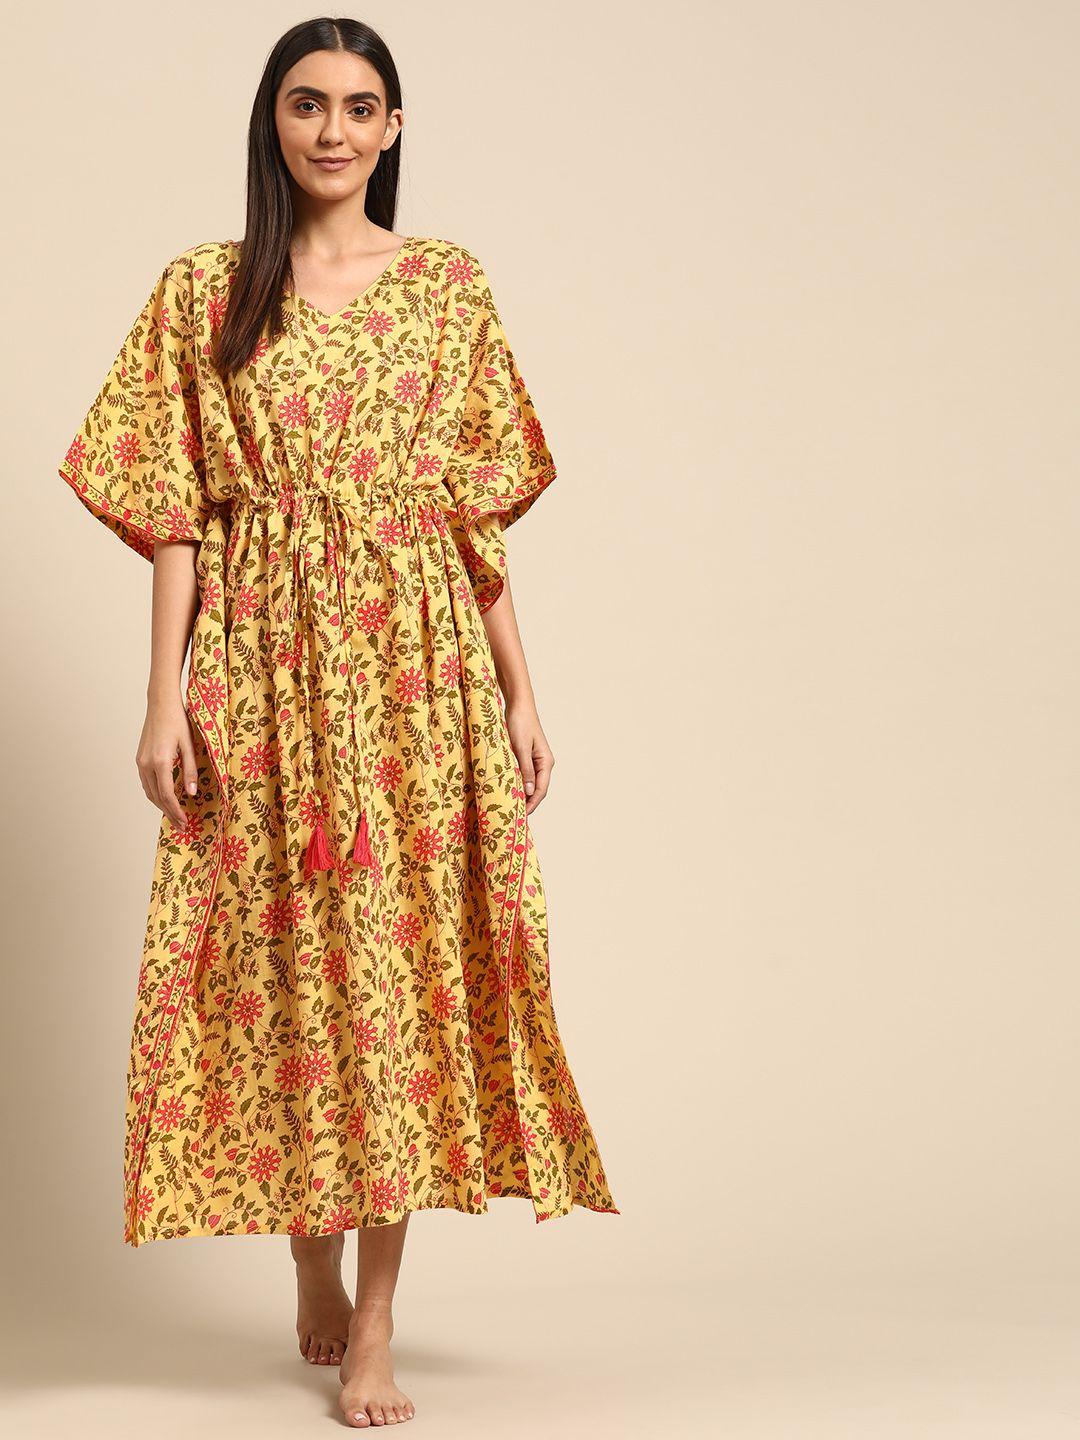 prakrti yellow & pink floral jaal print pure cotton kaftan nightdress